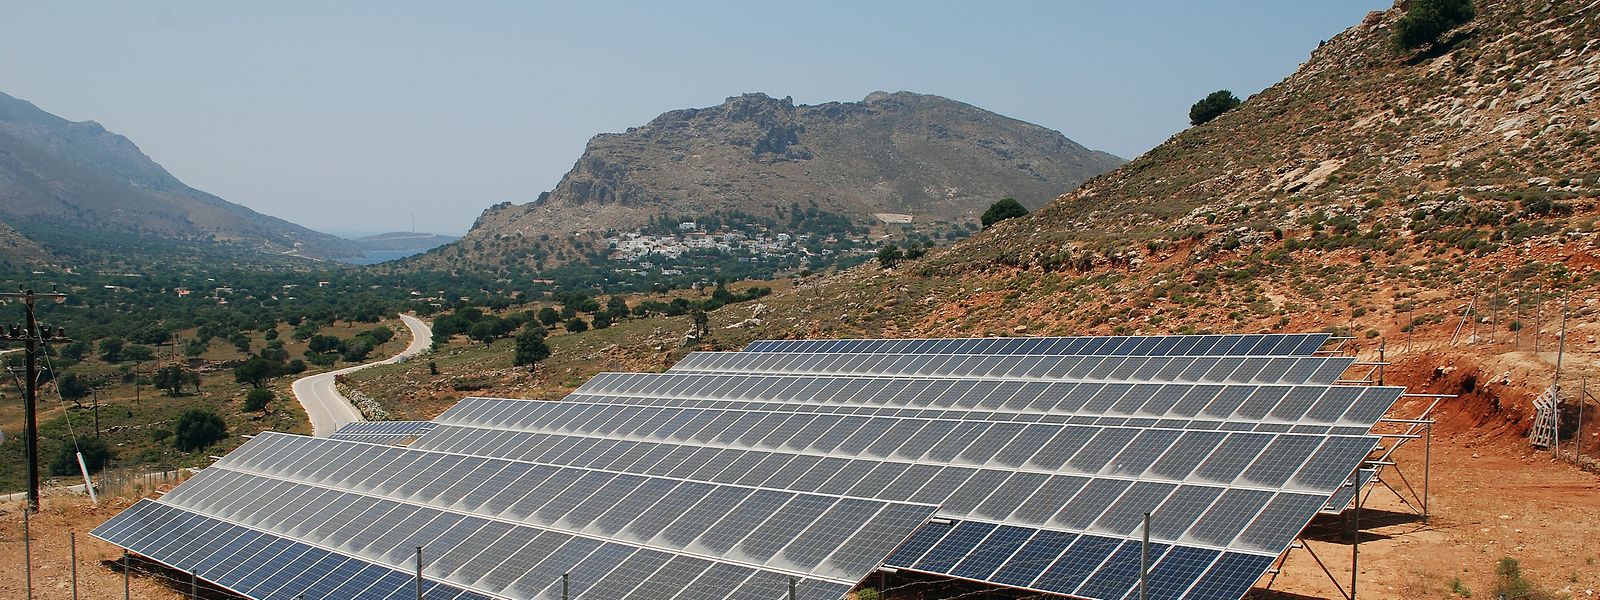 Griechenland will sein sonniges Klima nutzen, um klimaneutralen Wasserstoff herzustellen. 